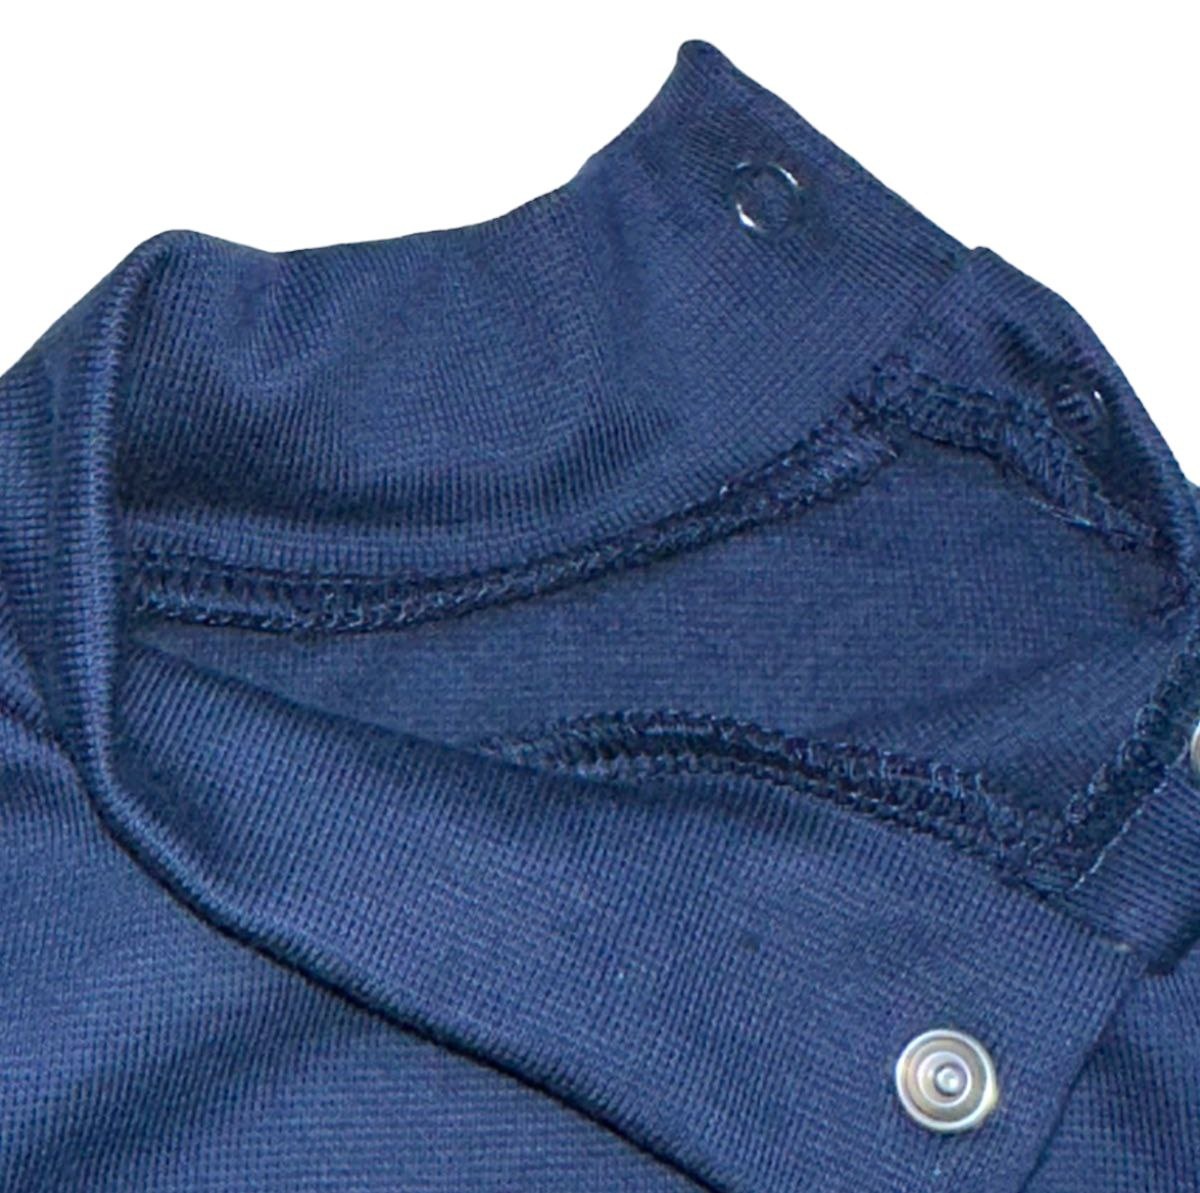 Комплект боді із брючками начесний стрейч інтерлок темно-синього кольору, Темно-синій, 3-6 місяці, 68см